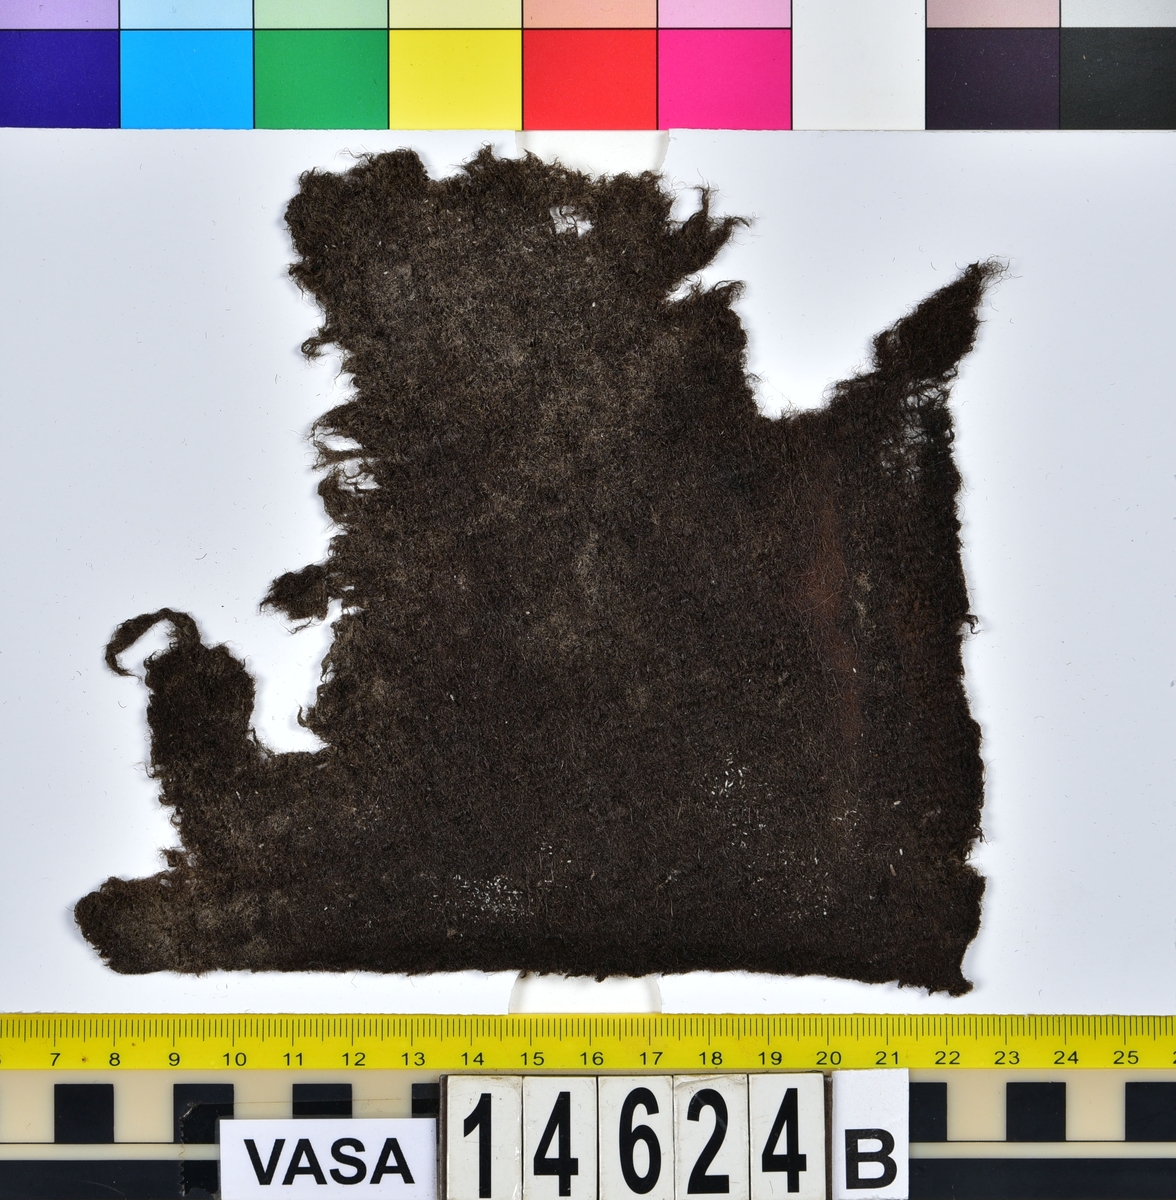 Textil.
Tre fragment uppdelade på fyndnummer 14624a-b.
Fnr 14624a består av två fragment av ull vävda i tuskaft samt valkade på ena sidan. Det ena fragmentet är litet och har troligen lossnat från det stora fragmentet. Det stora fragmentet har två bevarade originalkanter.
Fnr 14624b består av ett fragment av ull vävt i tuskaft samt valkat på ena sidan. Fragmentet har två bevarade originalkanter.